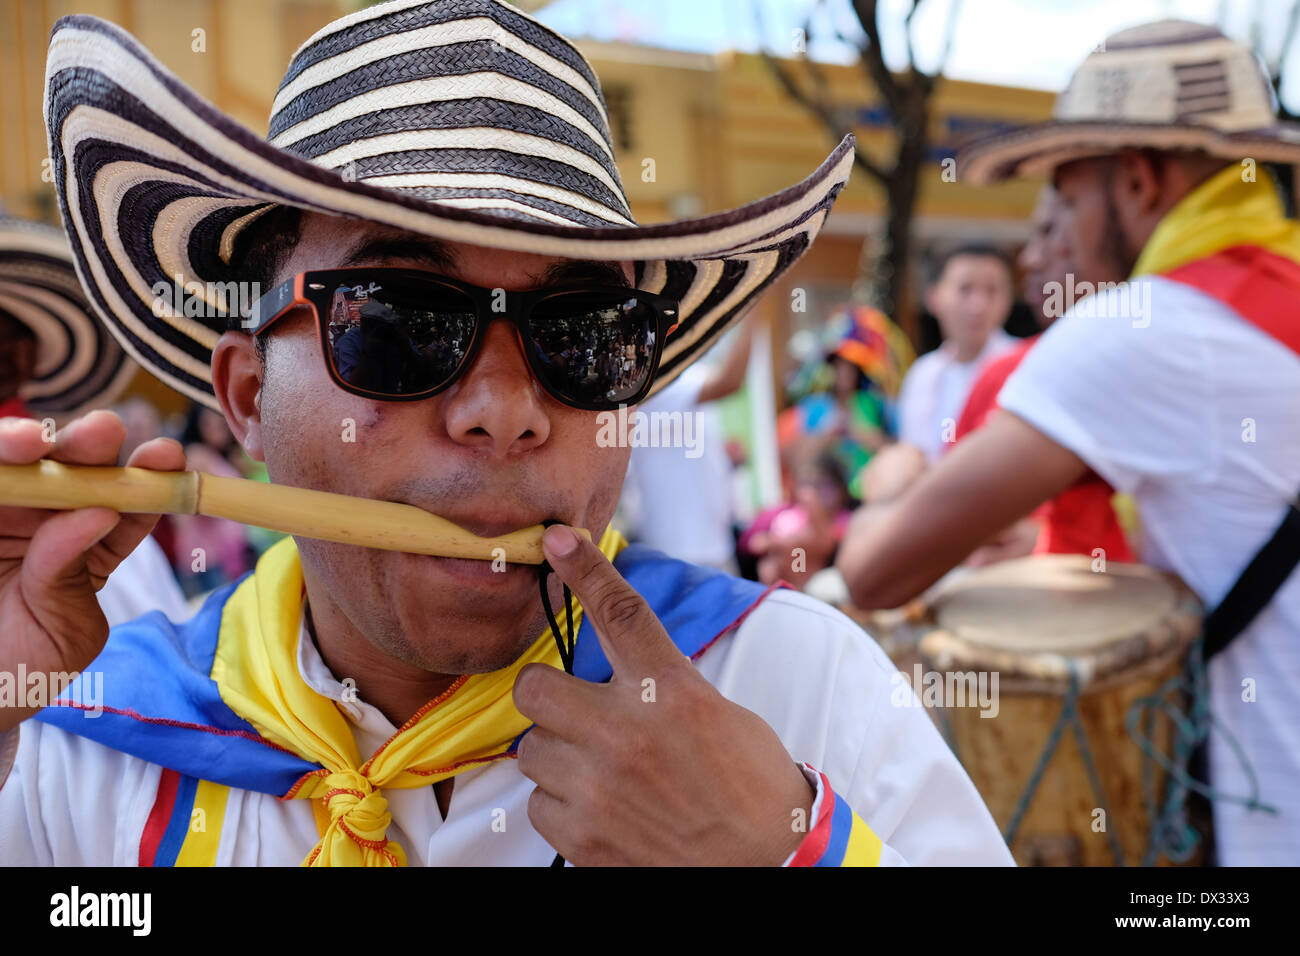 MIAMI - 9 mars 2014 : Portrait de l'artiste colombienne lors de la 37e rue Calle Ocho festival, un événement annuel qui a lieu sur 8 Rue de la petite havane avec beaucoup de musique, de la nourriture, et c'est la plus grande partie de la ville qui célèbre l'héritage hispanique. Banque D'Images